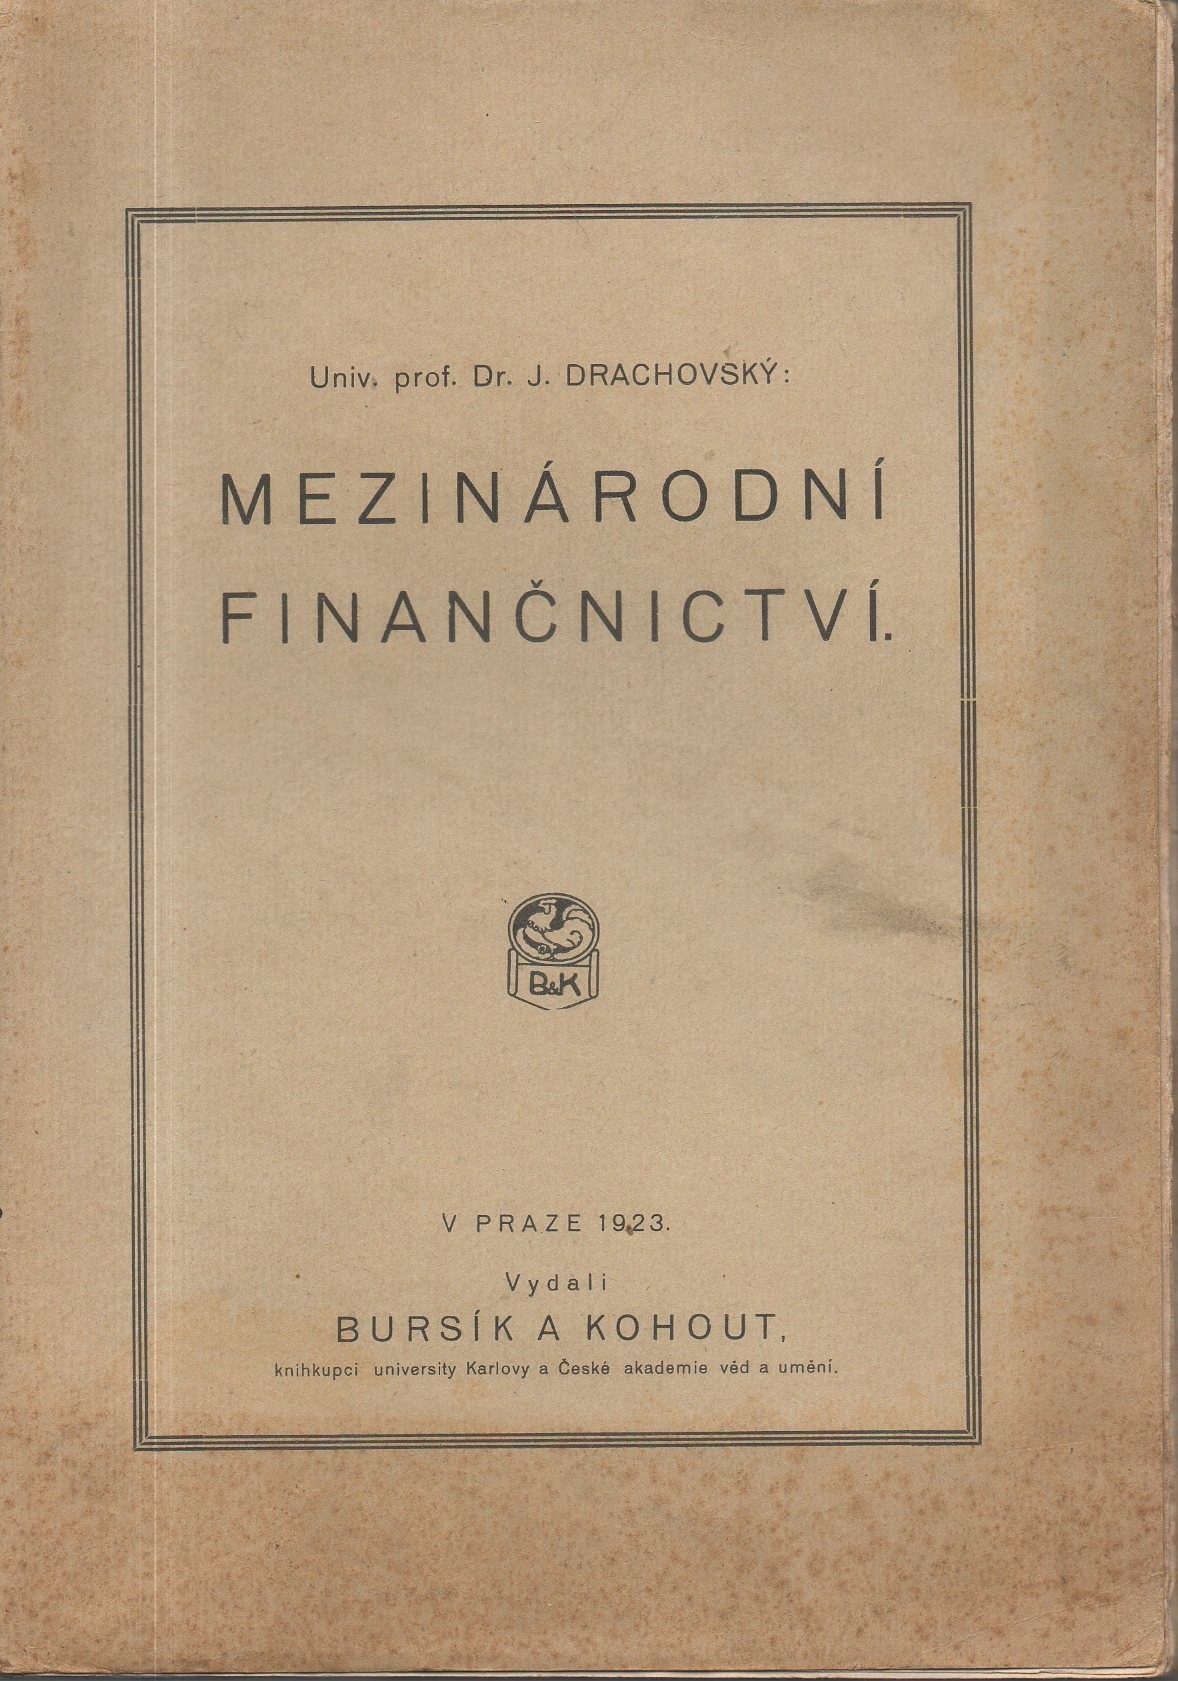 Drachovský: Mezinárodní finančnictví, 1923